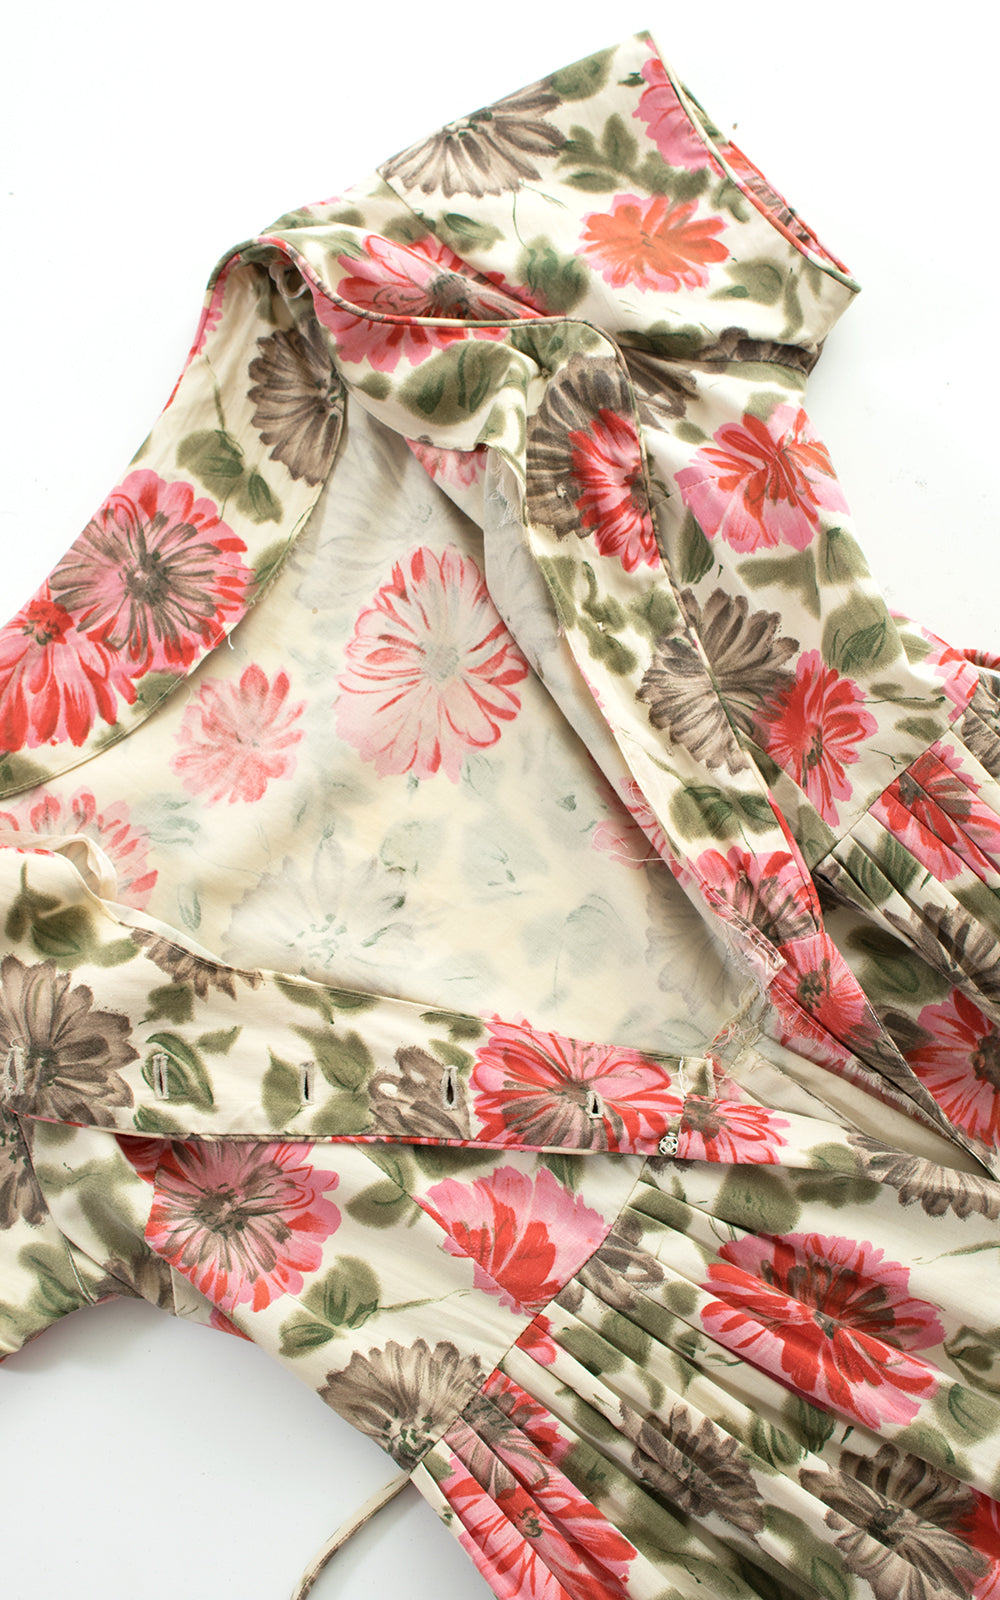 1950s Floral Cotton Shirtwaist Dress